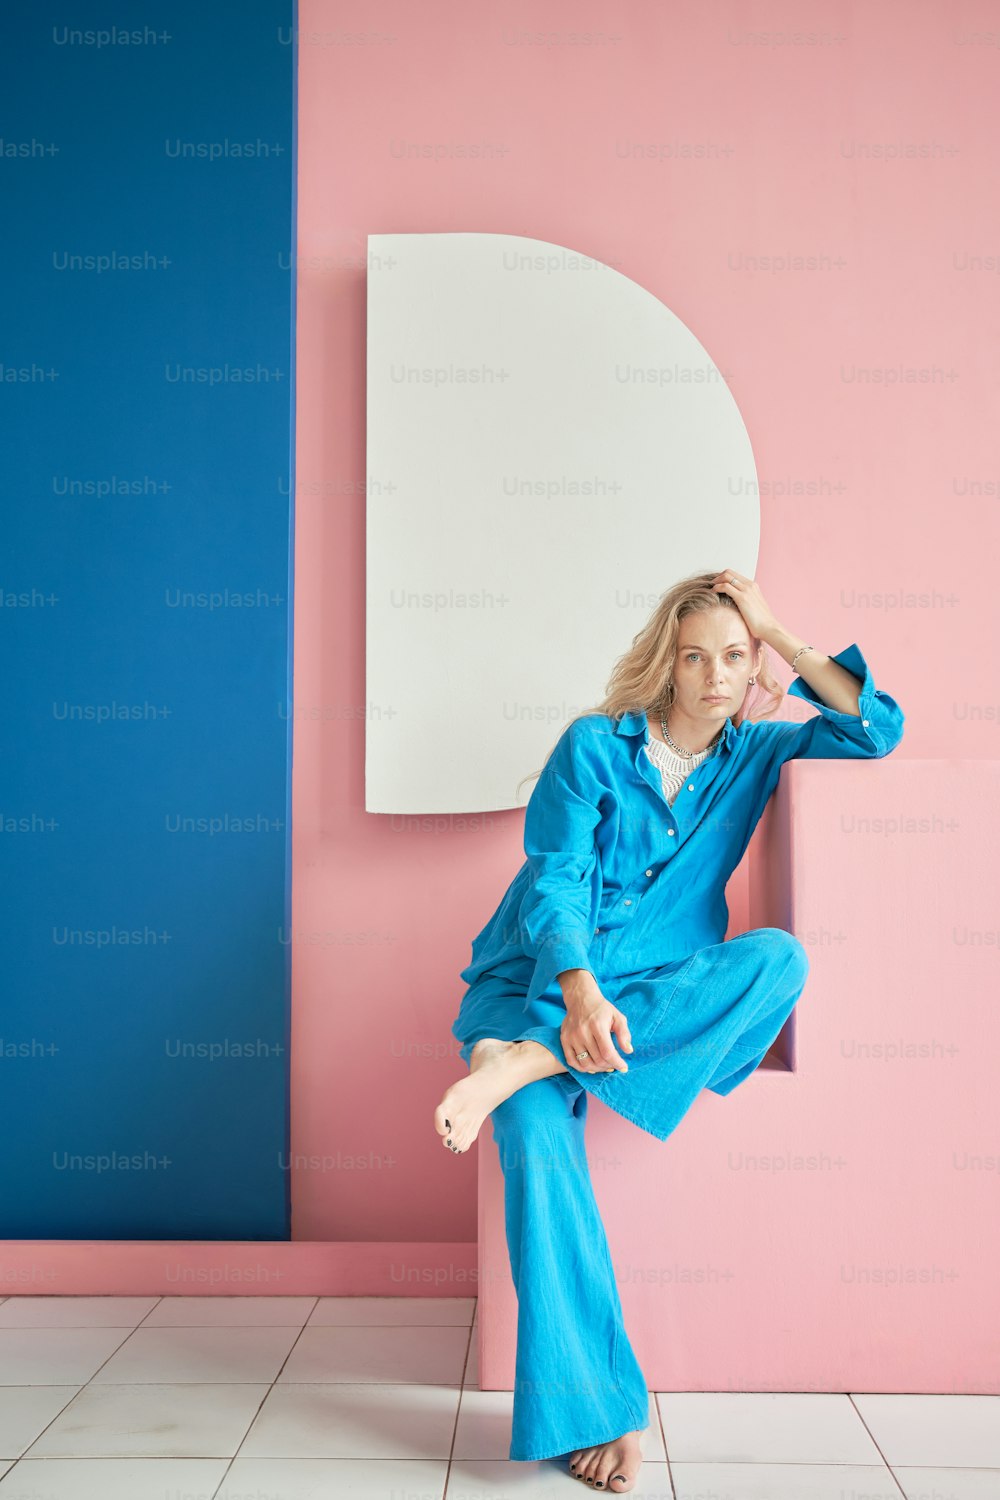 Une femme en combinaison bleue assise sur un mur rose et bleu